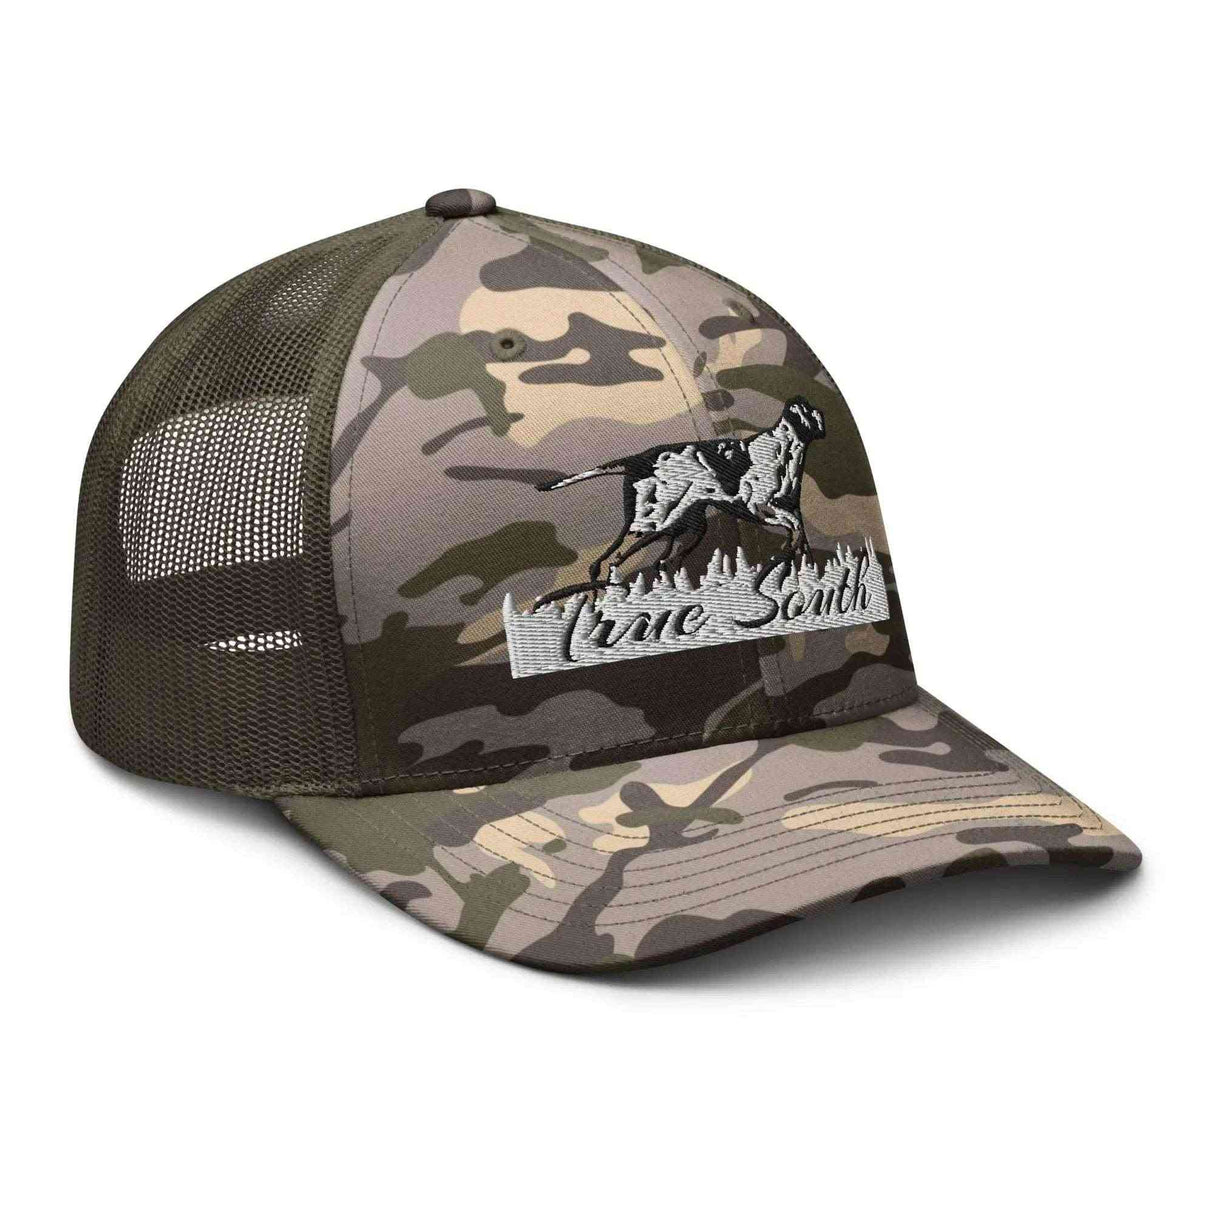 Camo Pointer Dog Hat - True South